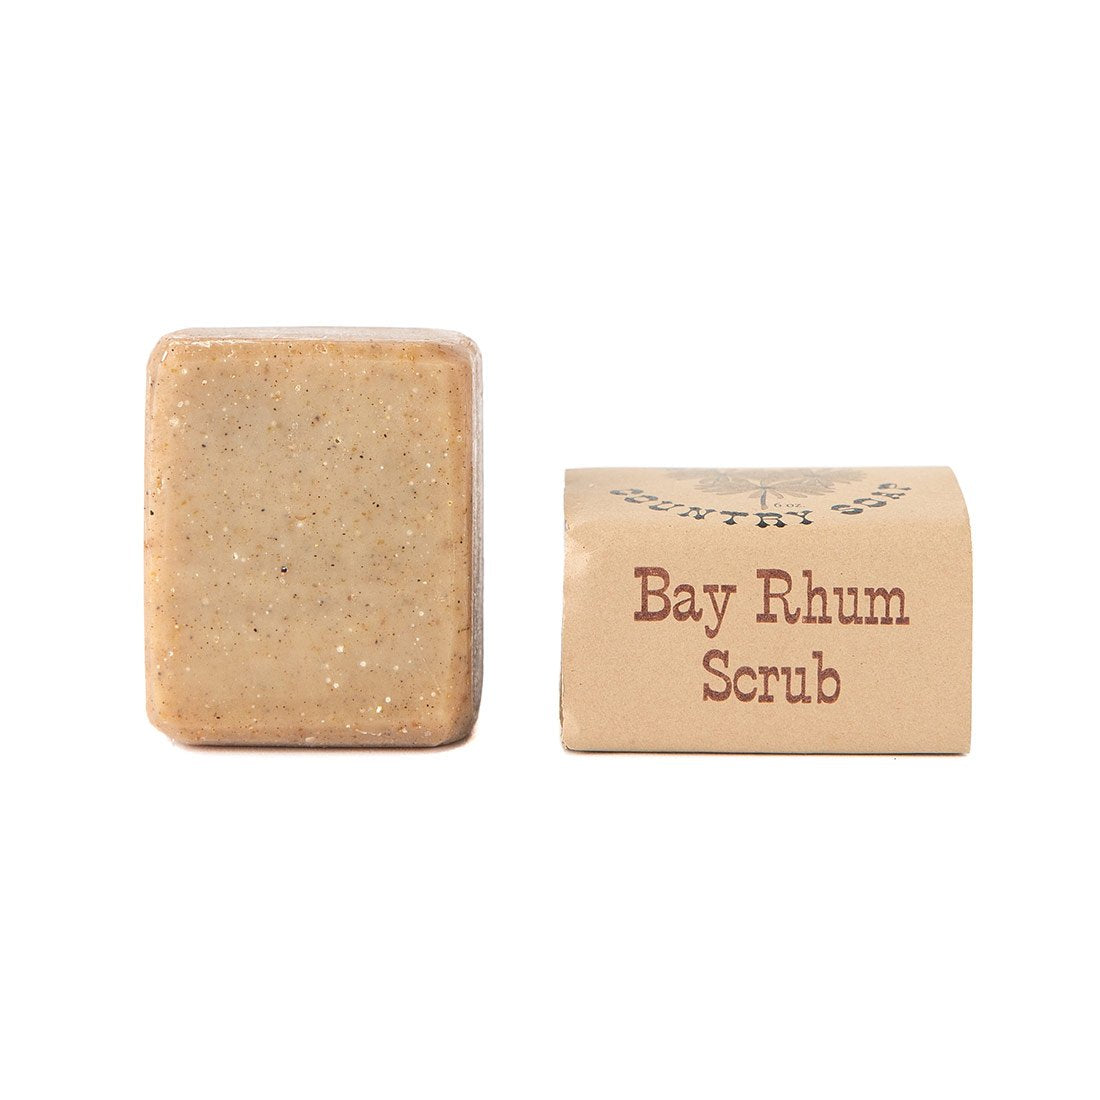 Bay Rhum Scrub Bar